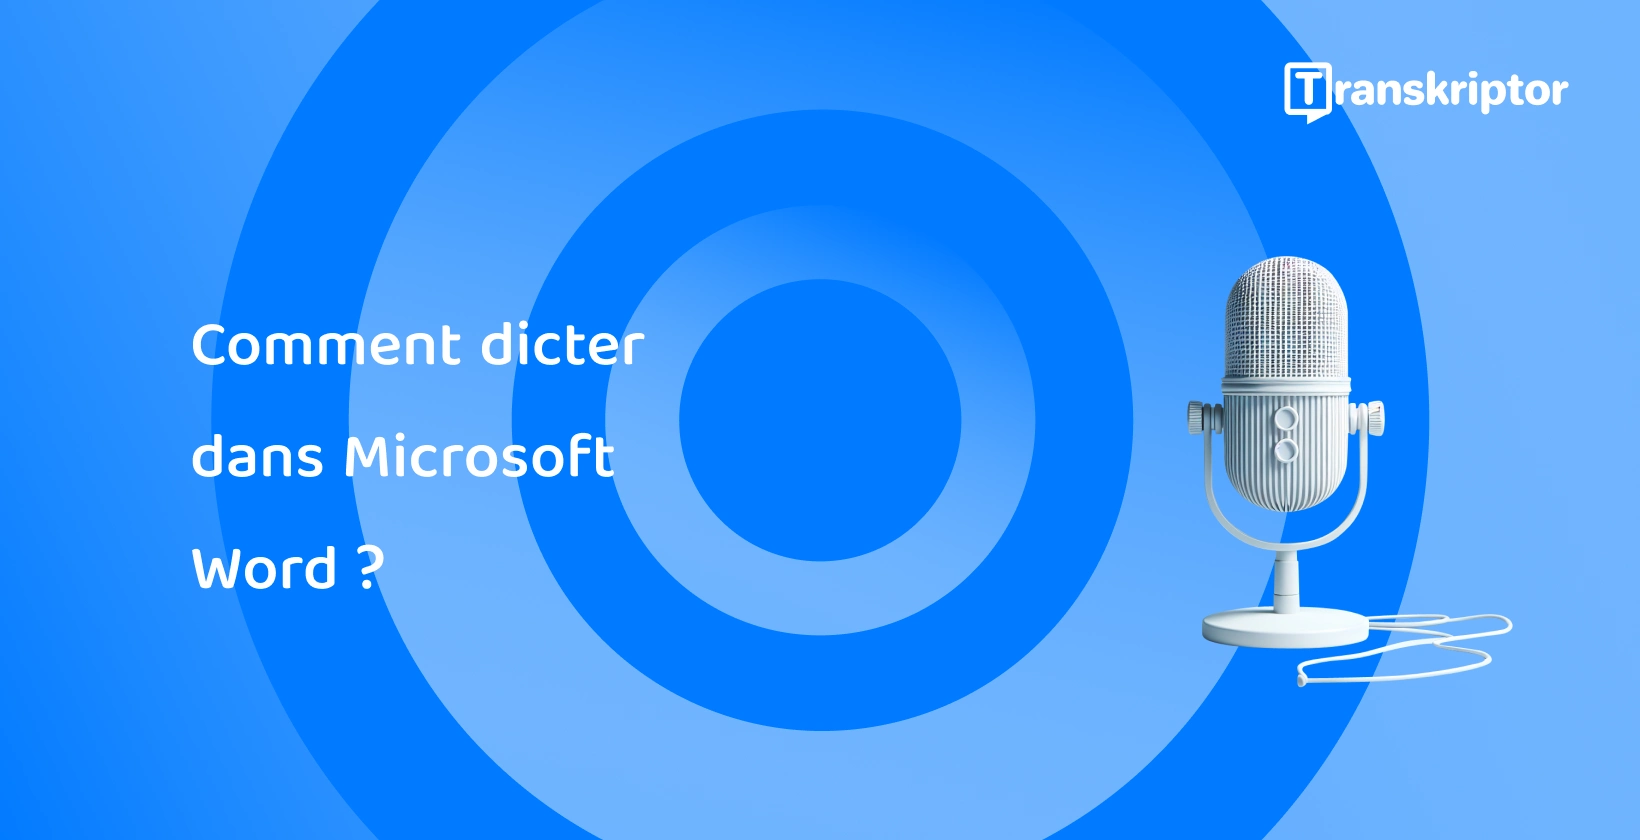 Un microphone moderne sur fond bleu, symbolisant les fonctionnalités de dictée vocale dans Microsoft Word.